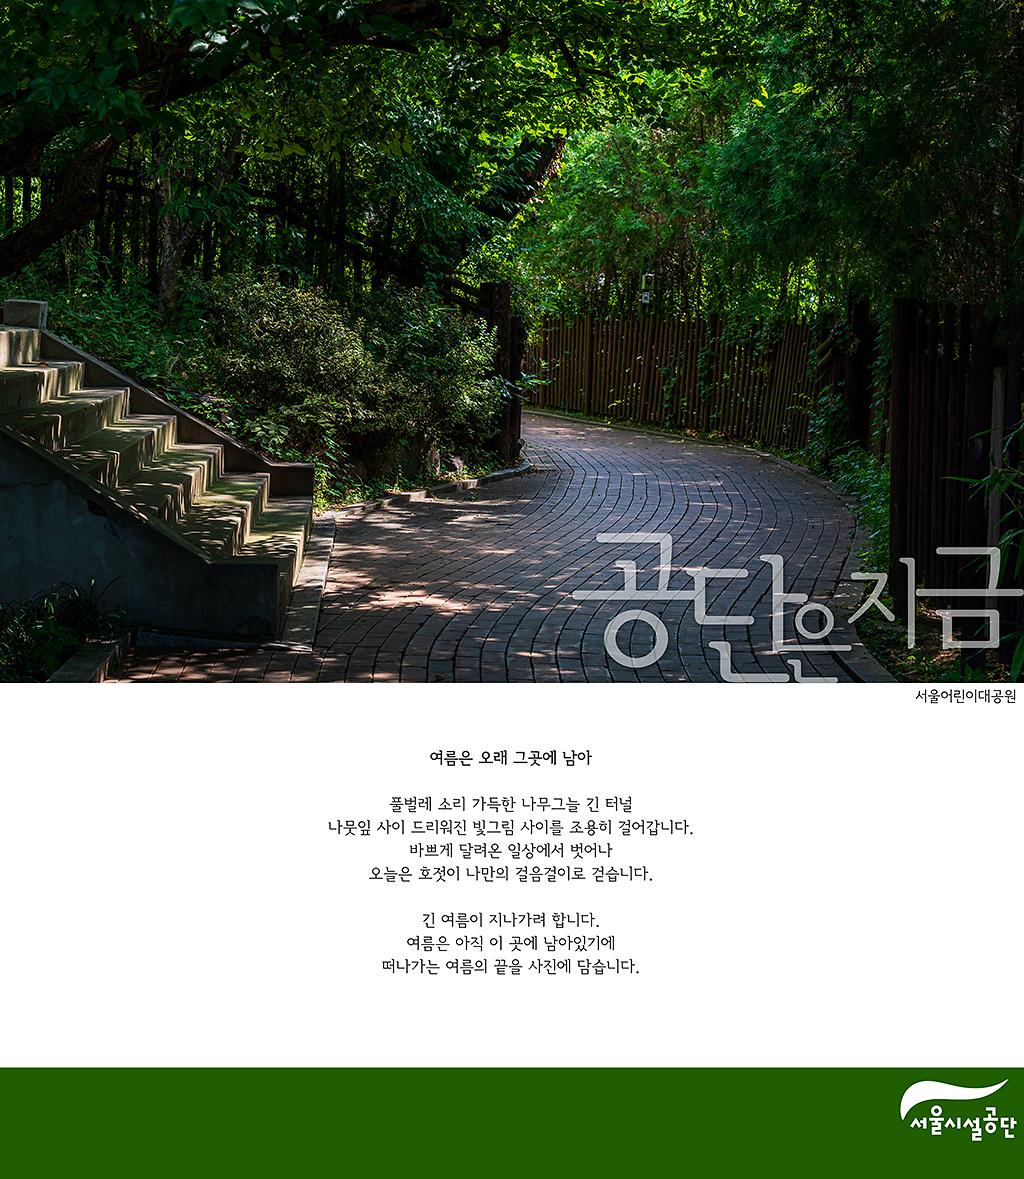 [공단은 지금] 여름은 오래 그곳에 남아, 서울어린이대공원 늦여름 풍경 사진